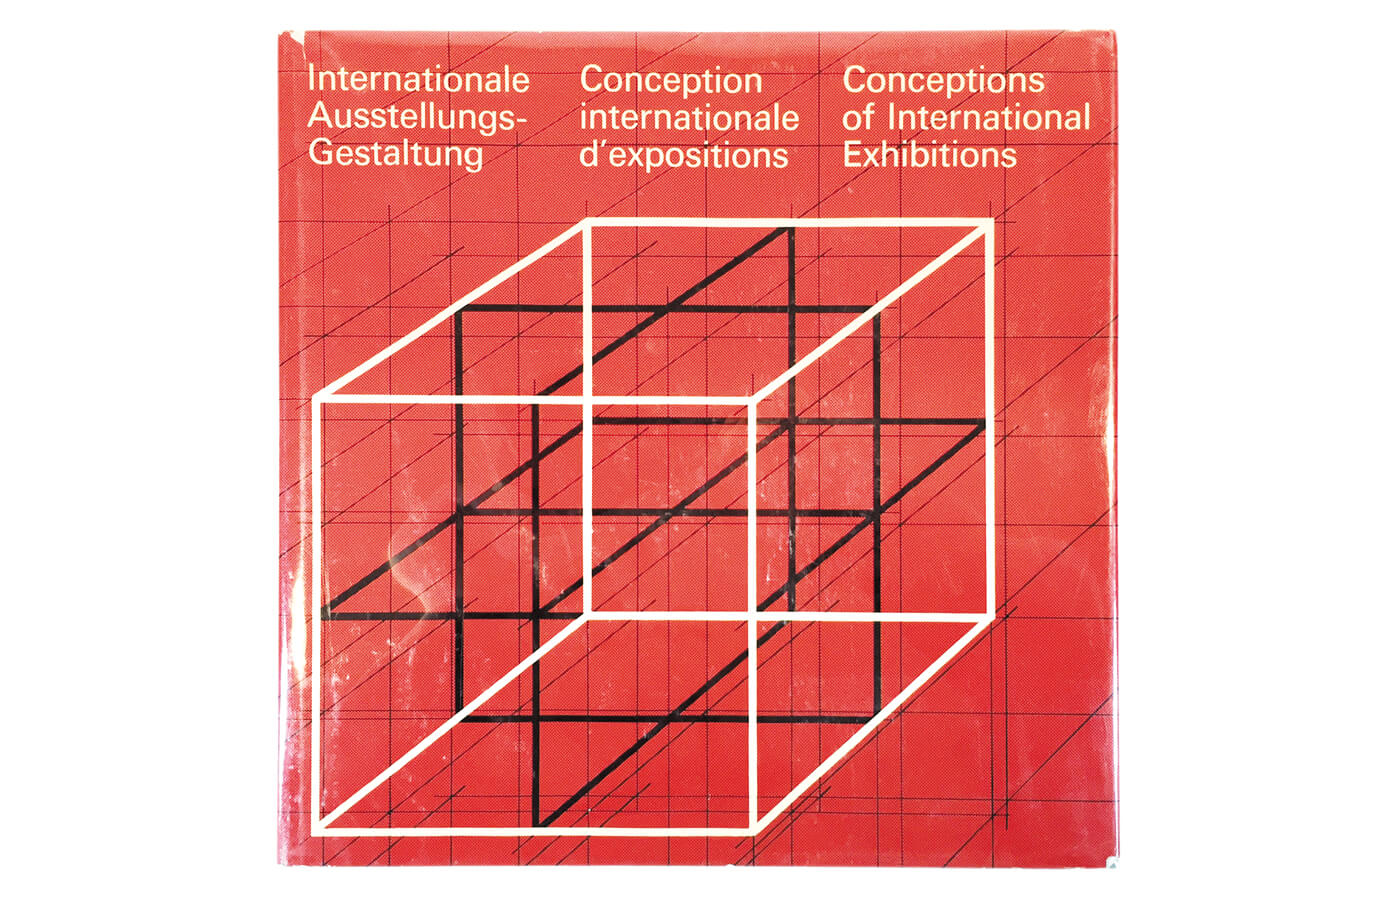 Internationale Ausstellungs-Gestaltung | Conception internationale d’expositions | Conceptions of International Exhibitions